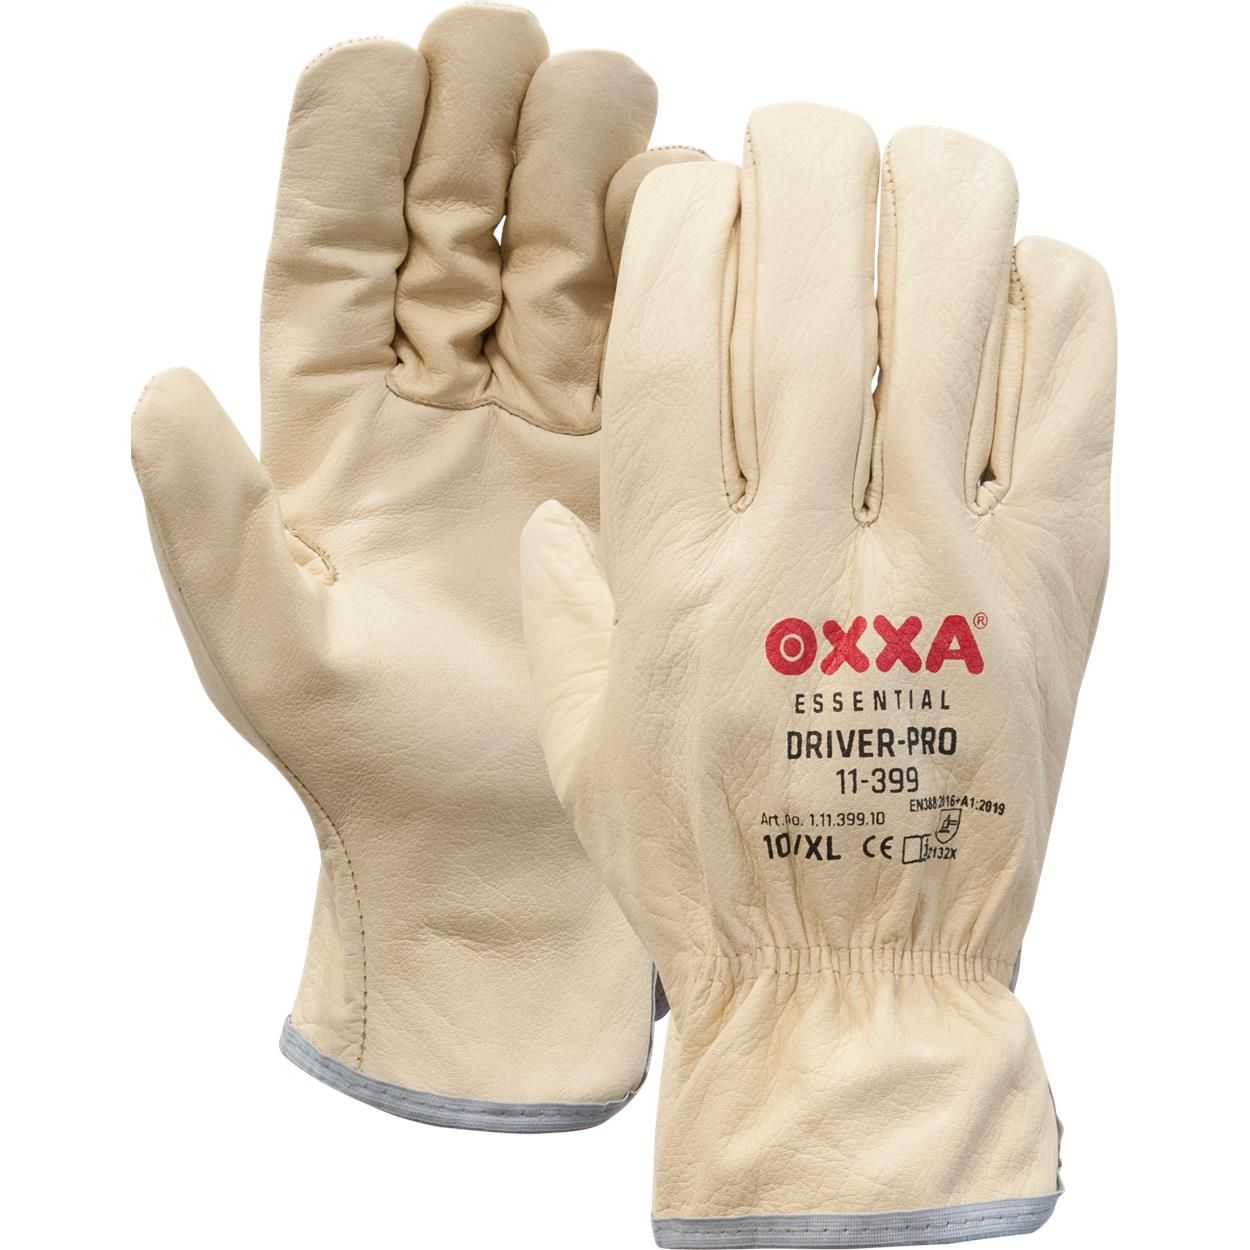 OXXA Driver-Pro 11-399 werkhandschoenen